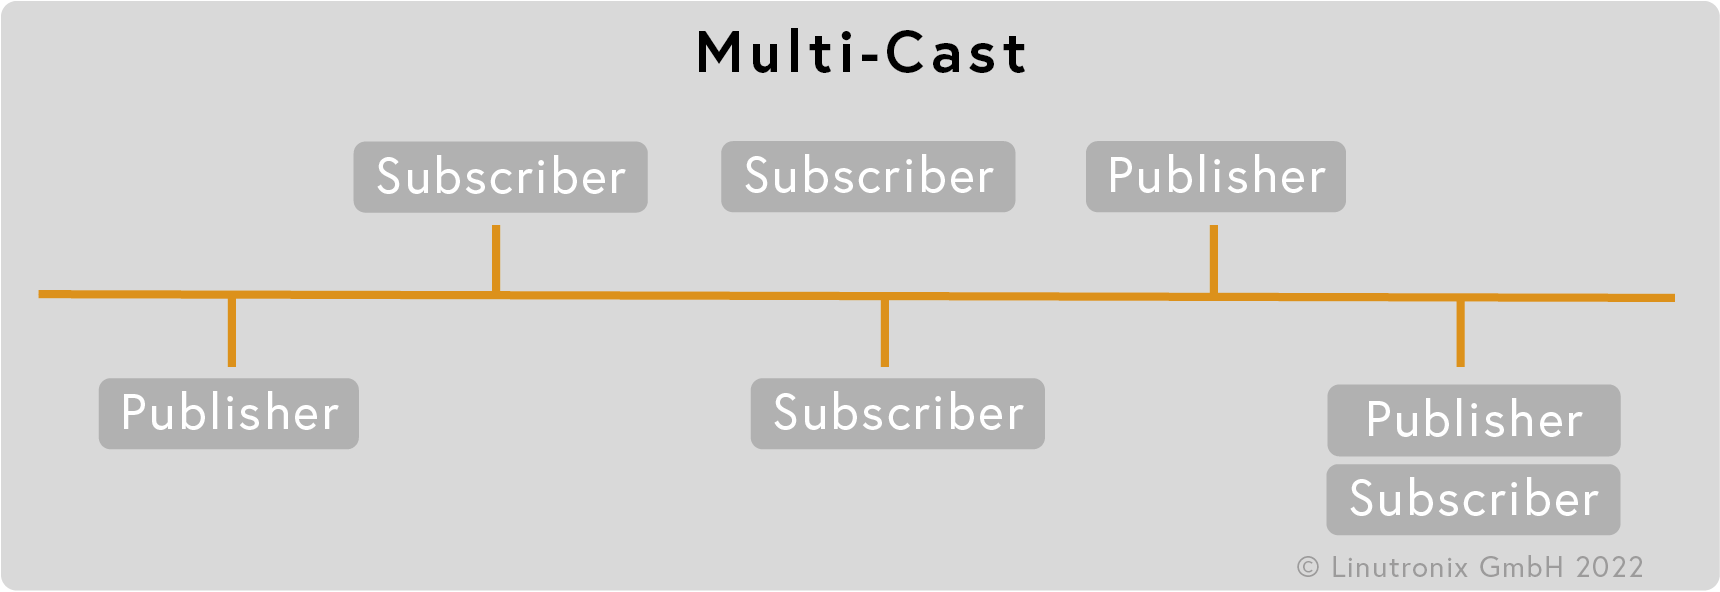 Multi-Cast 